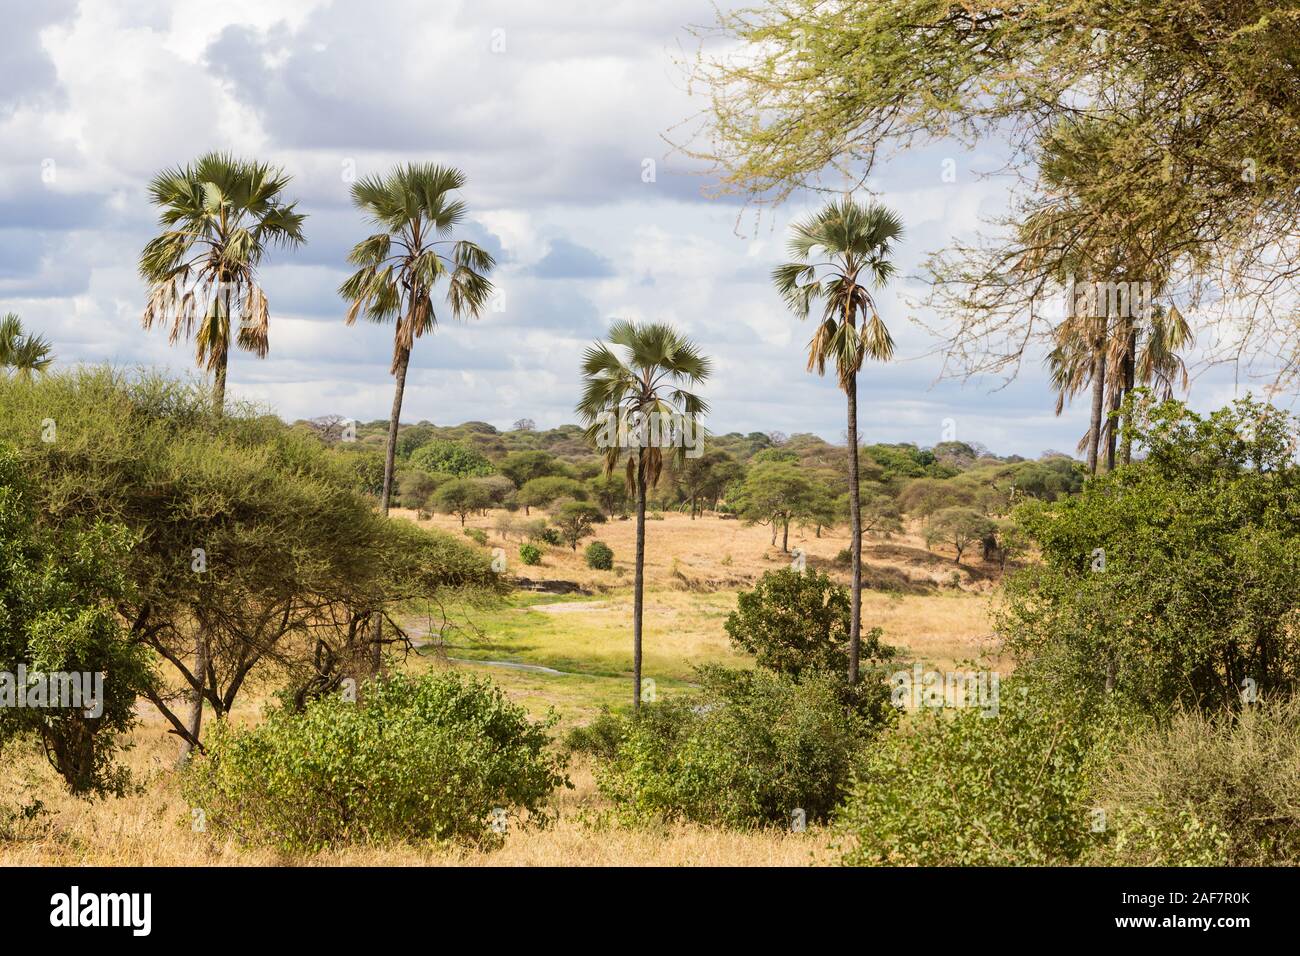 Tansania. Der Tarangire National Park. Die malerische Landschaft mit doum Palmen (Hyphaene compressa). Stockfoto